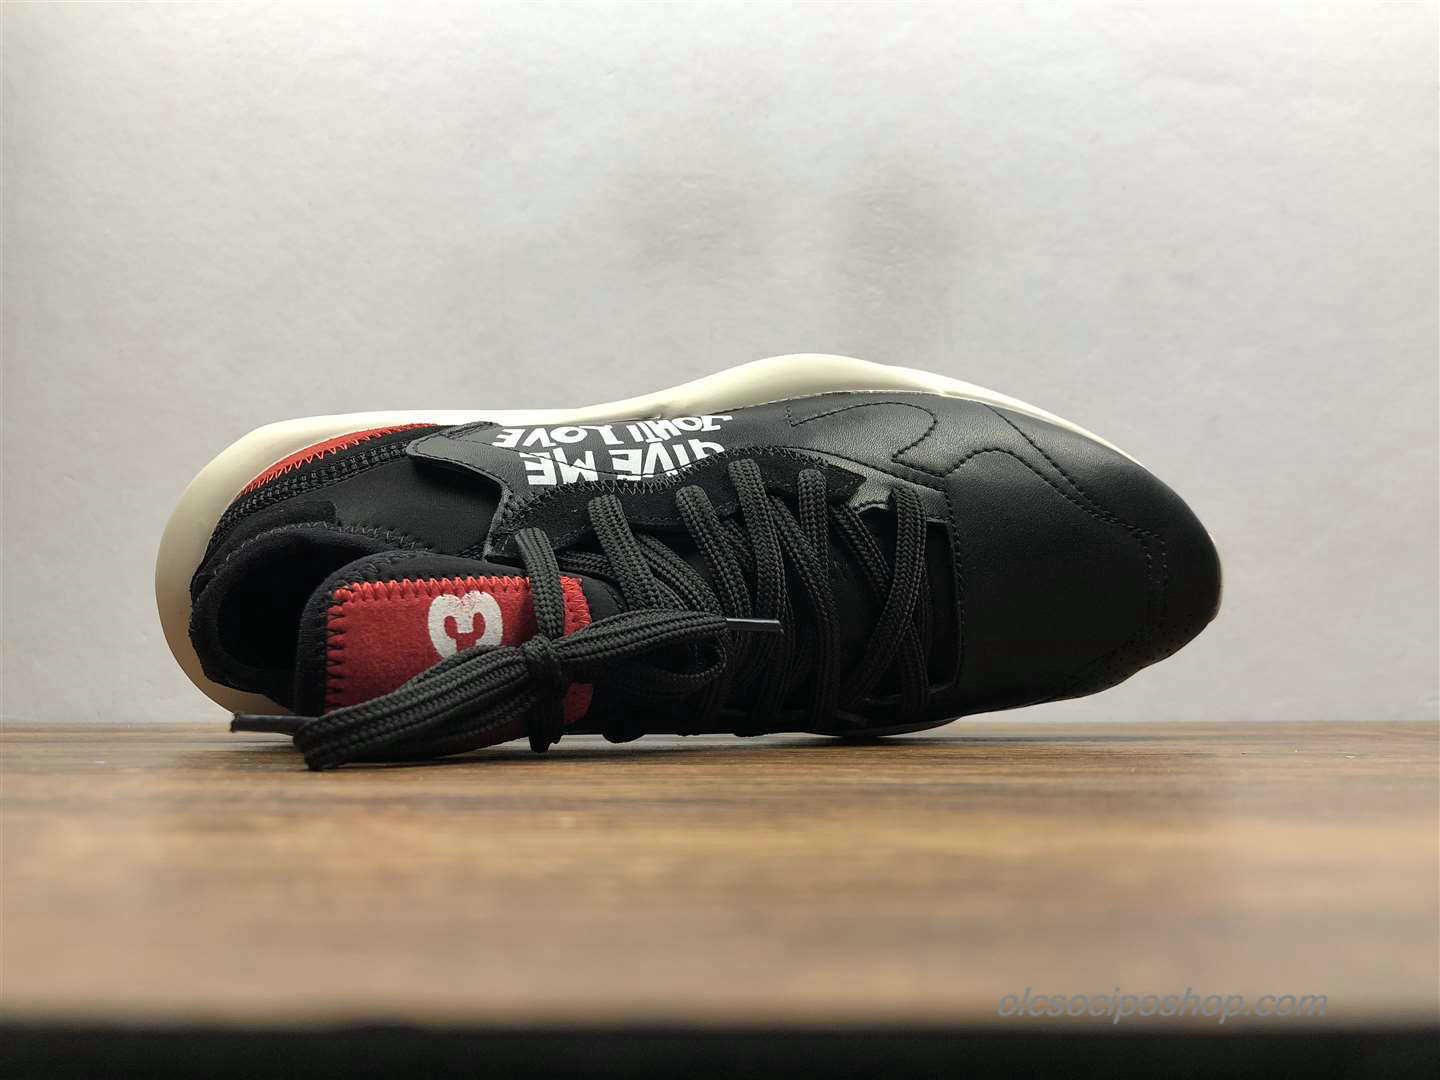 Yohji Yamamoto x Adidas Y-3 Kaiwa Chunky Fekete/Piszkosfehér/Piros Cipők (A8860) - Kattintásra bezárul